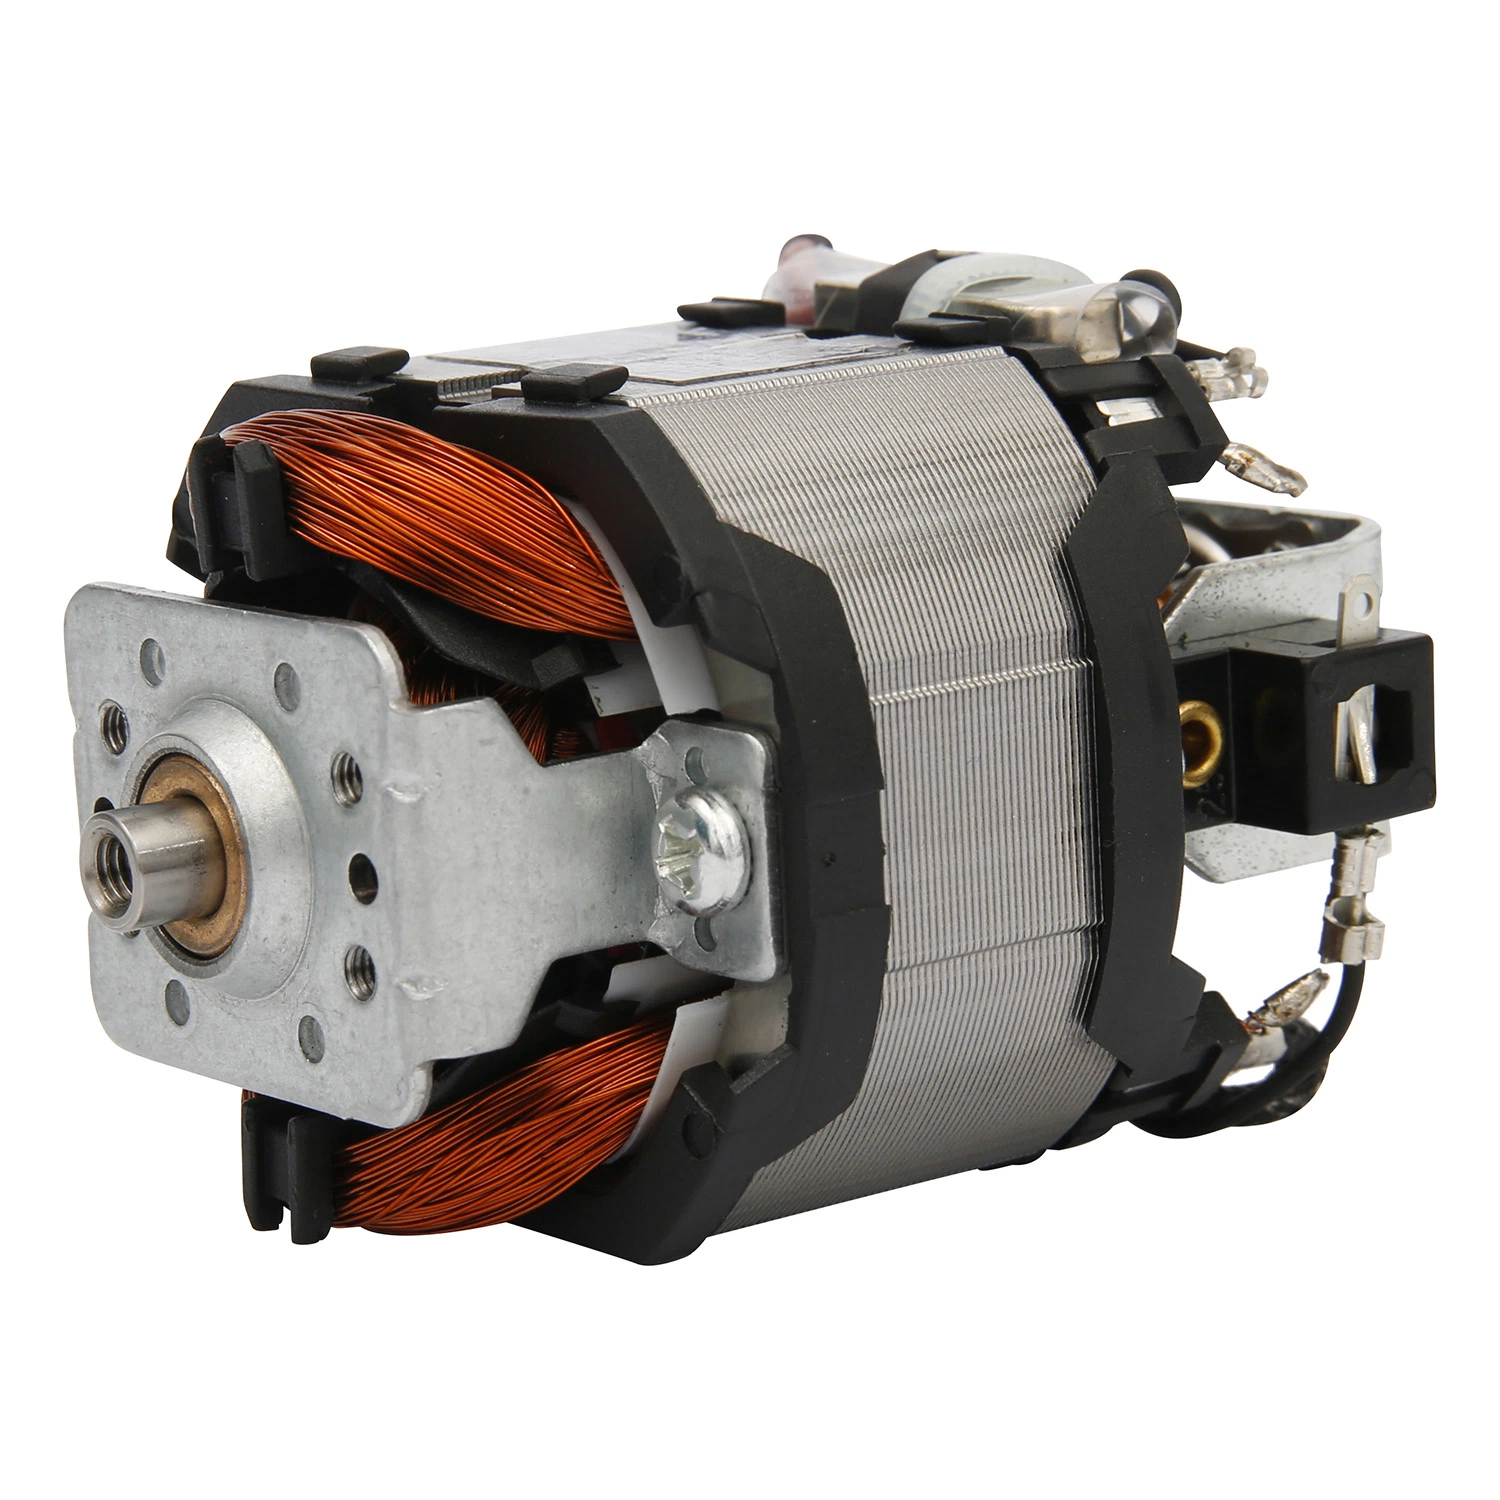 National Standard Universal Electric Blender DC Motor